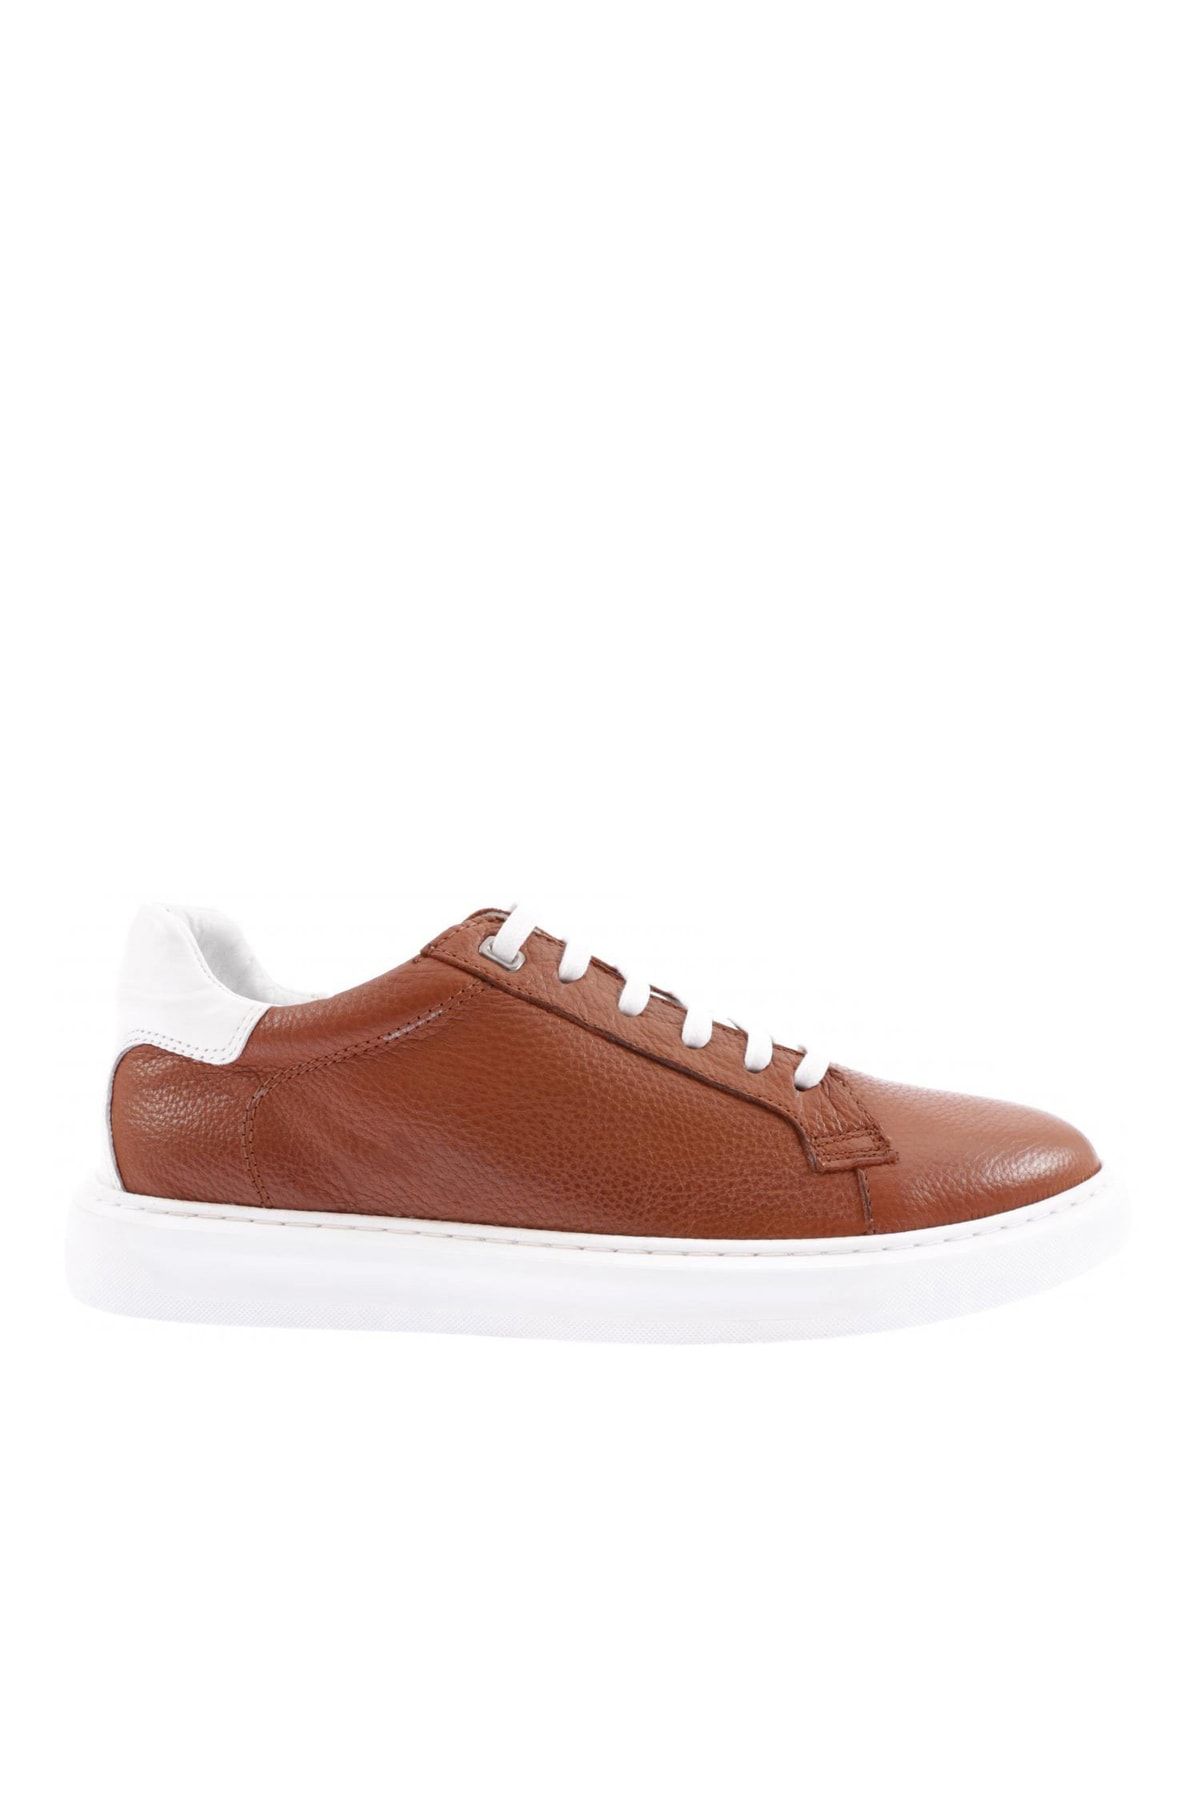 Pierre Cardin Kahverengi - Dgn 22y-c11701 Erkek Sneakers Ayakkabı